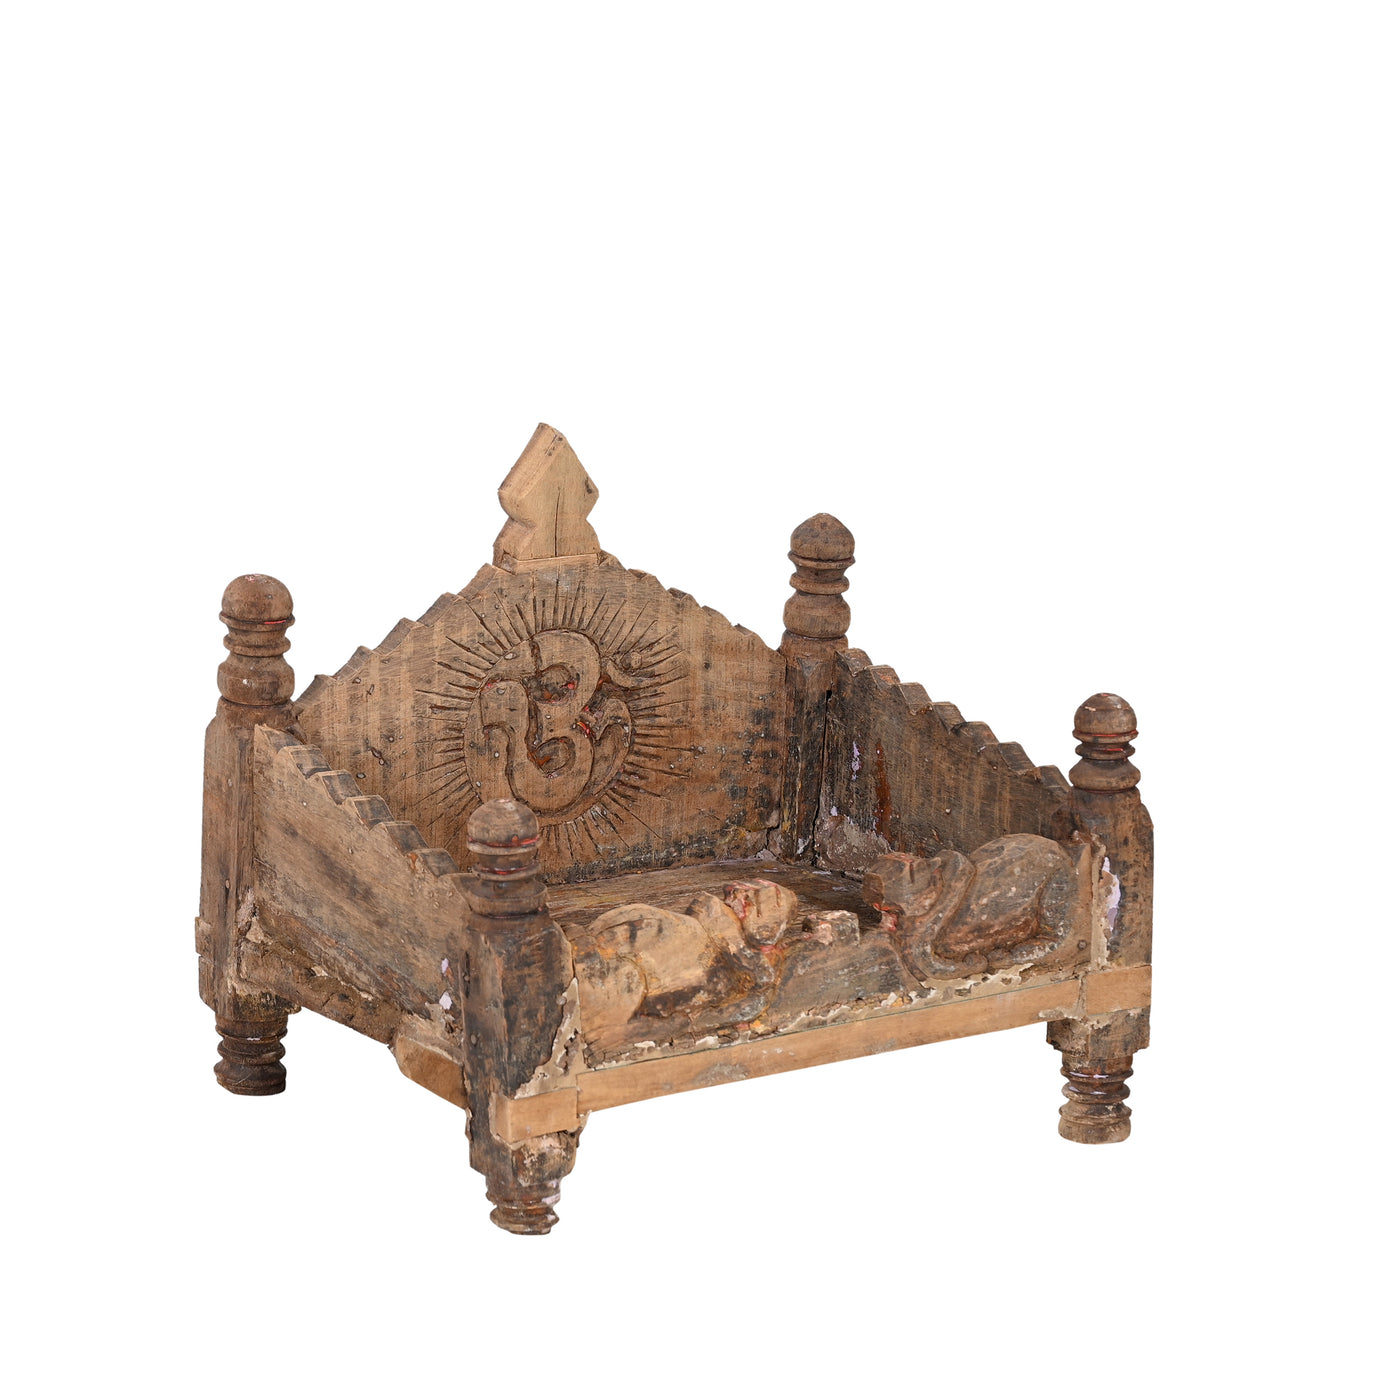 Kalasa - Small wooden altar n ° 6